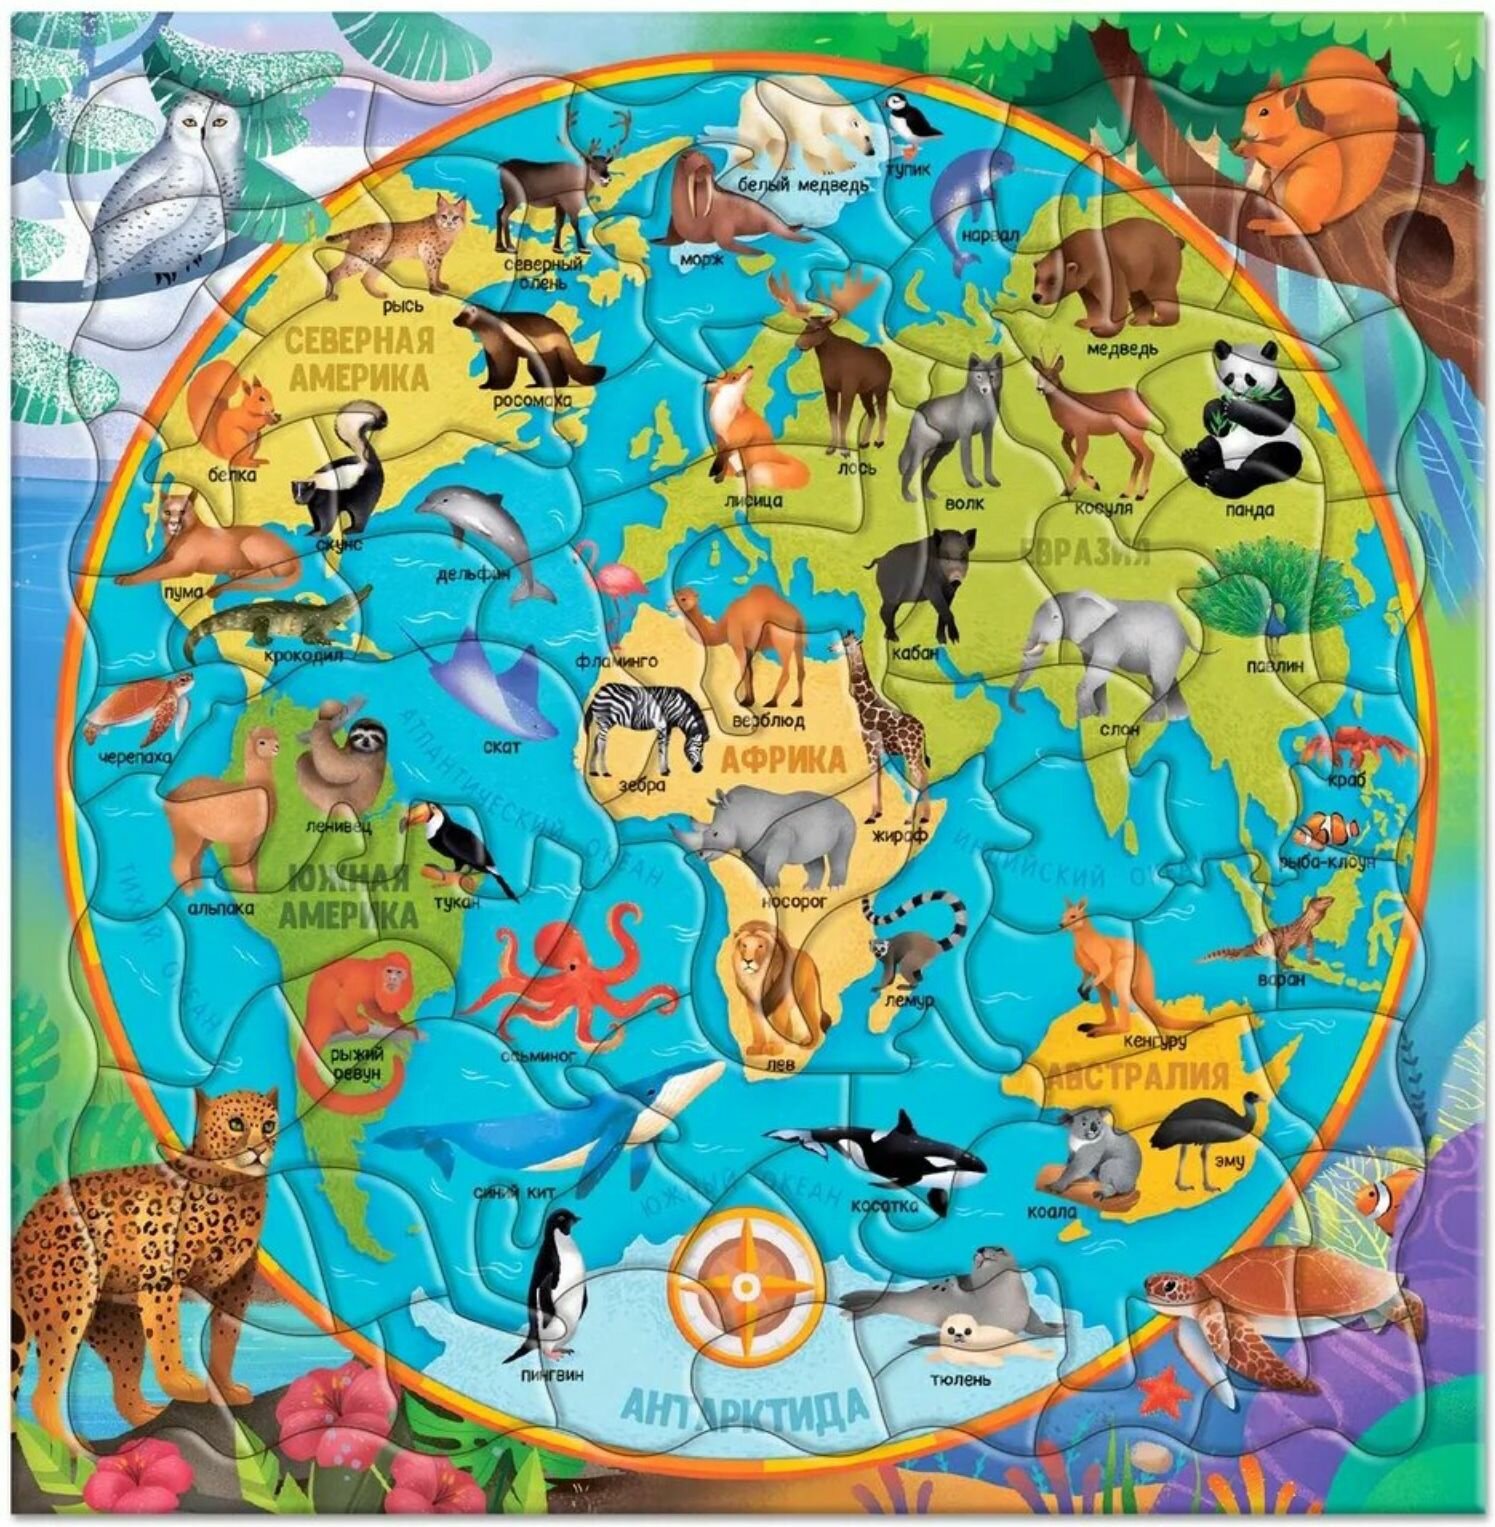 ГеоДом. Пазл фигурный на подложке "Карта мира. Животные" 80 деталей 30х30,5 см.